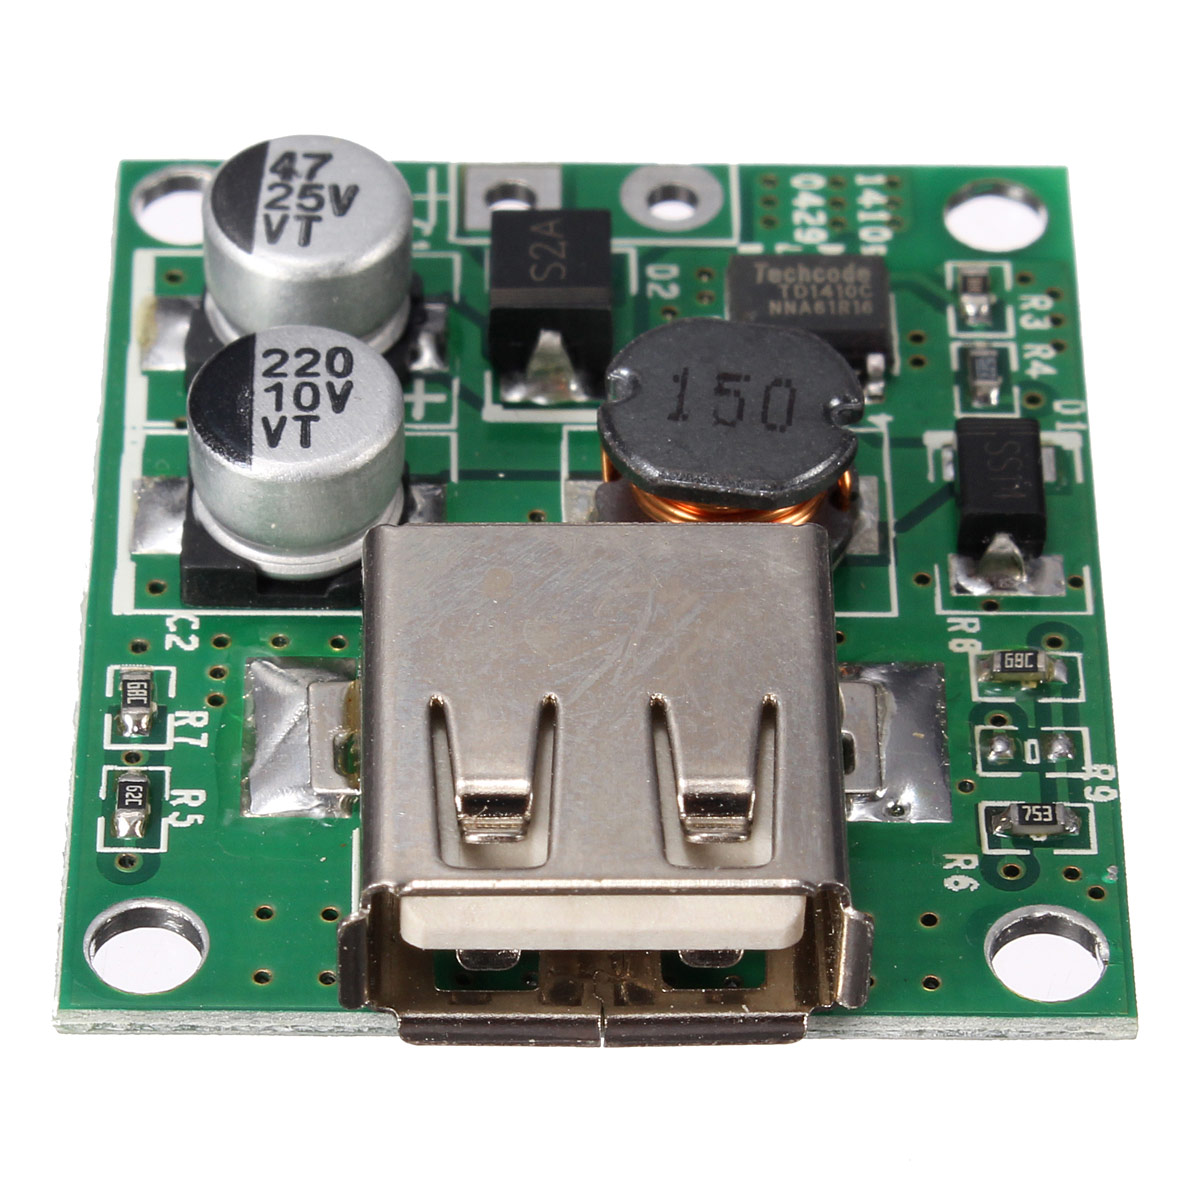 20pcs-5V-2A-Solar-Panel-Power-Bank-USB-Charge-Voltage-Controller-Regulator-Module-6V-20V-Input-For-U-1369836